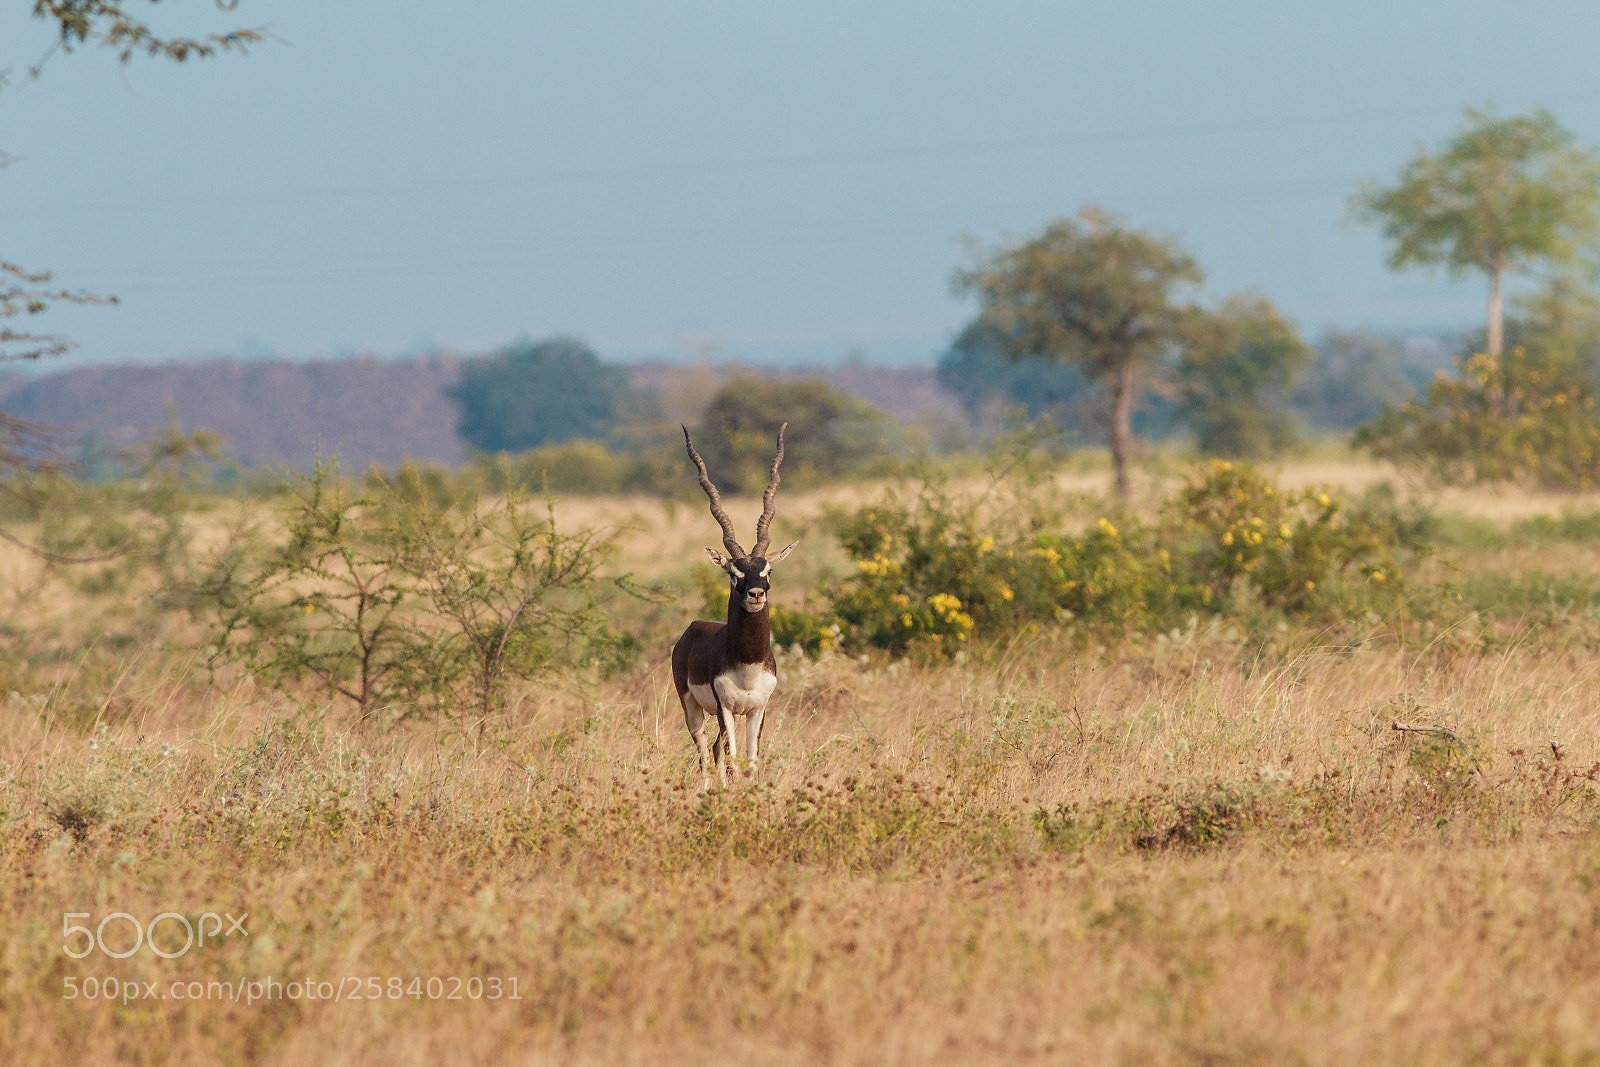 Canon EOS 70D sample photo. Blackbuck (indian antelope) photography